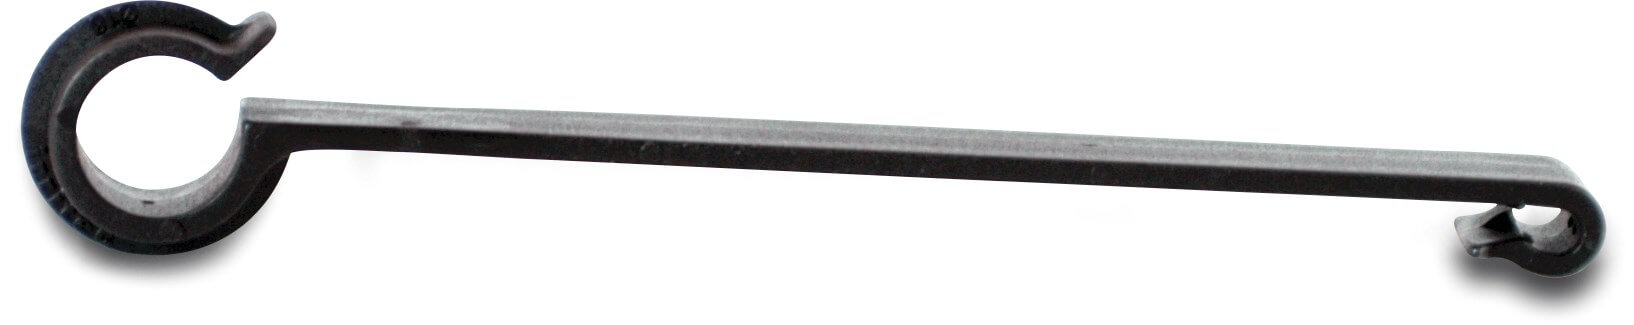 Long hook PP 16 mm 15cm black